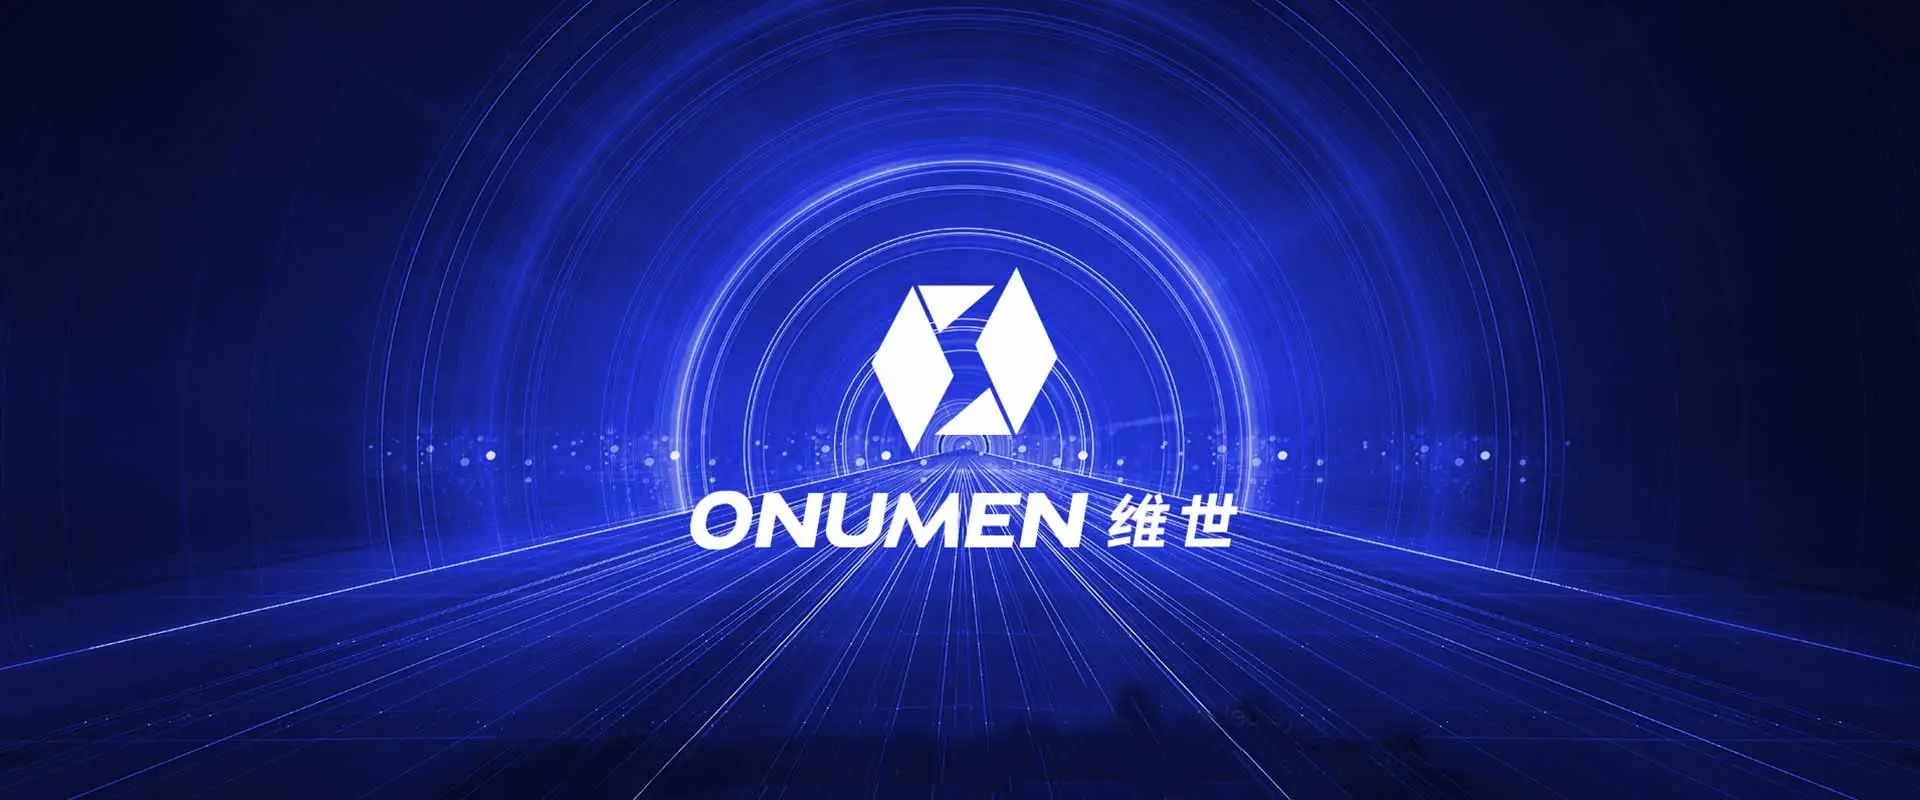 شركة Onumen هي الشركة الرائدة عالميًا في أنظمة الفيديو LED المحمولة والقابلة للطي